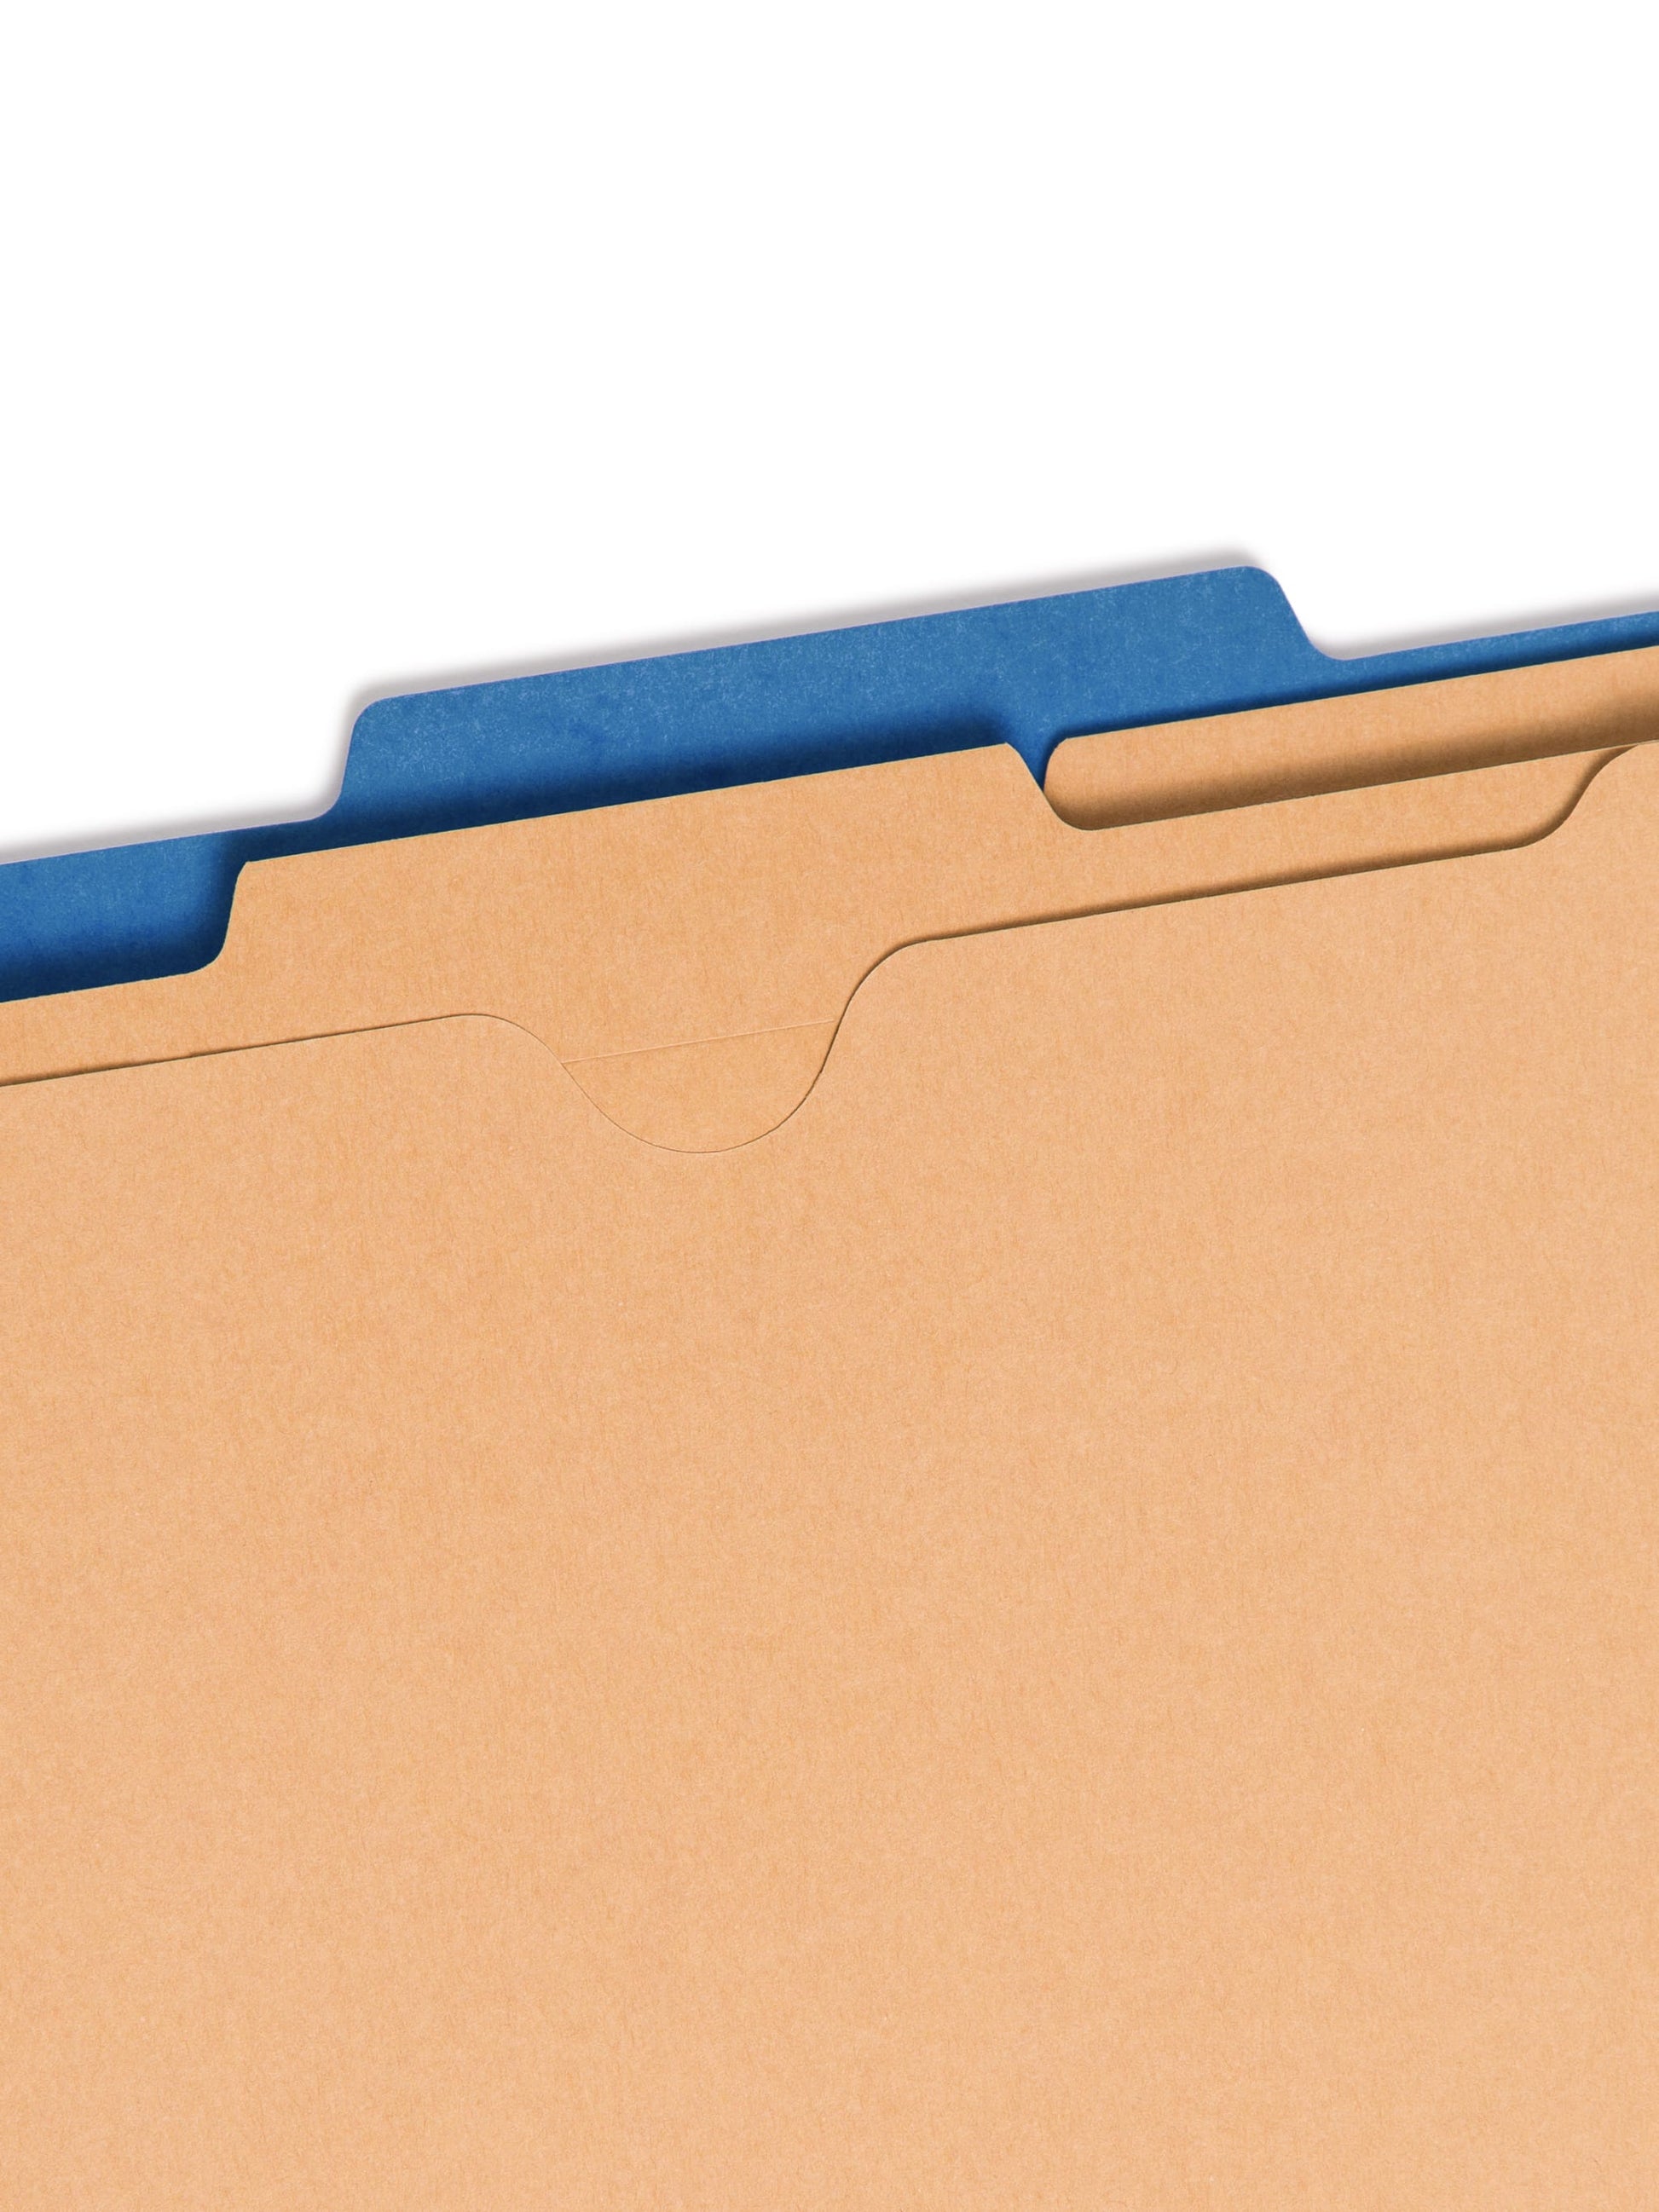 SafeSHIELD® Pressboard Classification File Folders with Pocket Dividers, Dark Blue Color, Letter Size, 